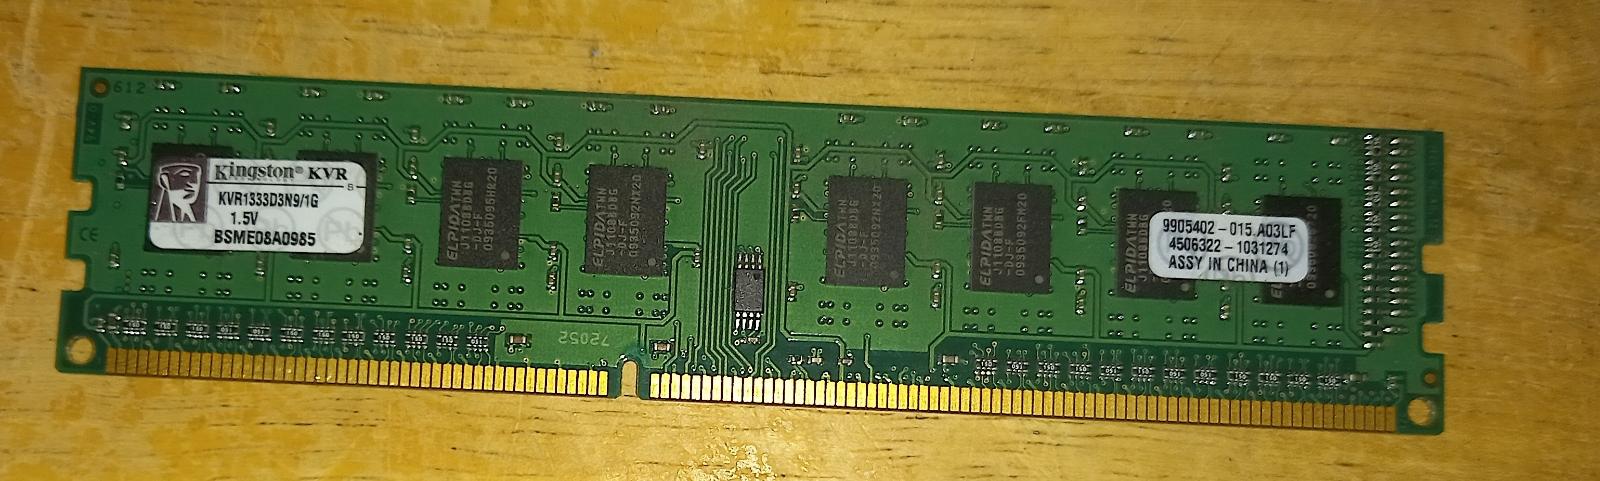 RAM DDR3 Kingston 1GB - Počítače a hry